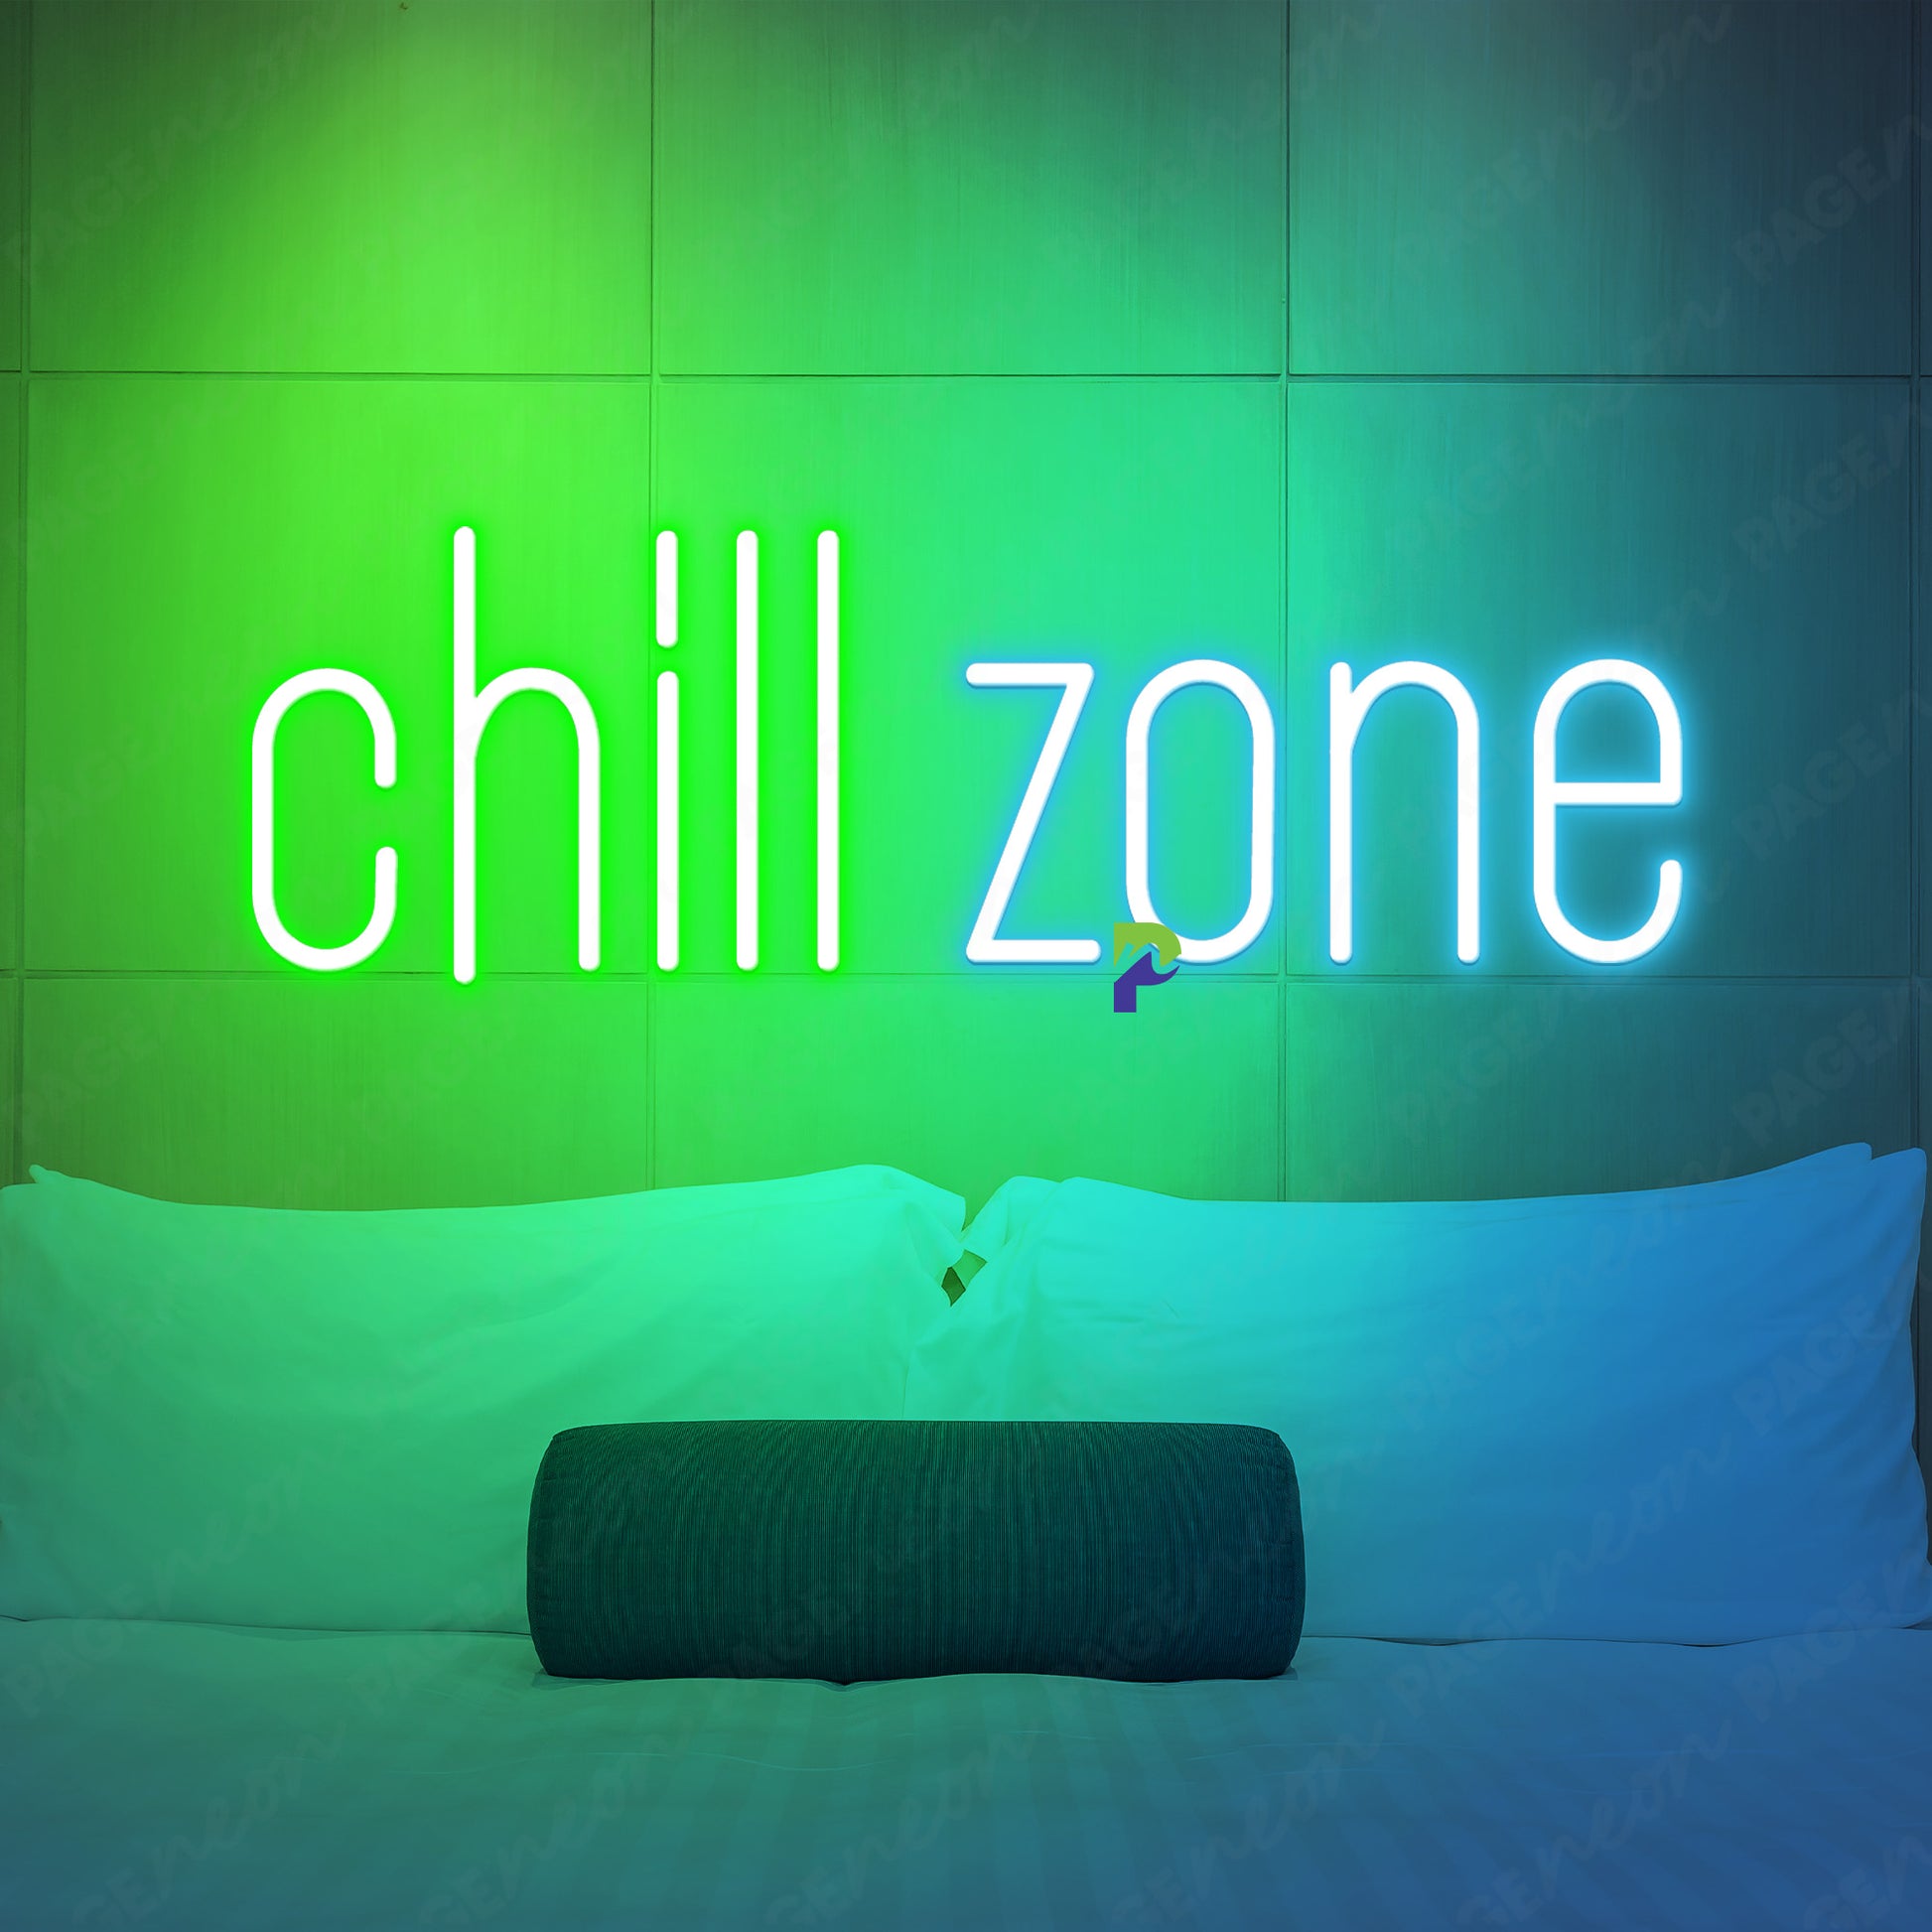 Chill Zone Neon Sign Gamer Led Light